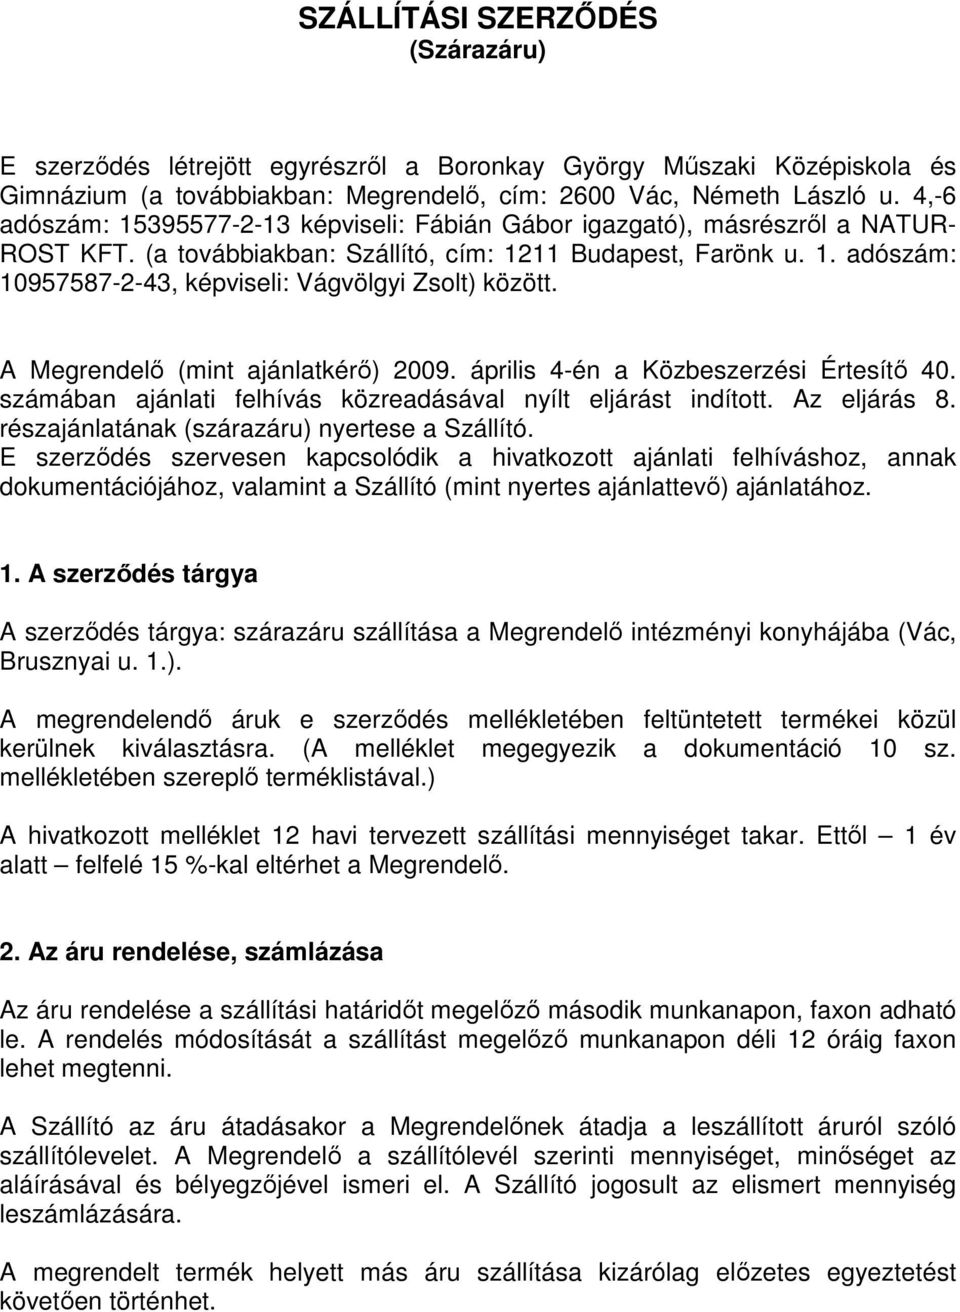 A Megrendelı (mint ajánlatkérı) 2009. április 4-én a Közbeszerzési Értesítı 40. számában ajánlati felhívás közreadásával nyílt eljárást indított. Az eljárás 8.